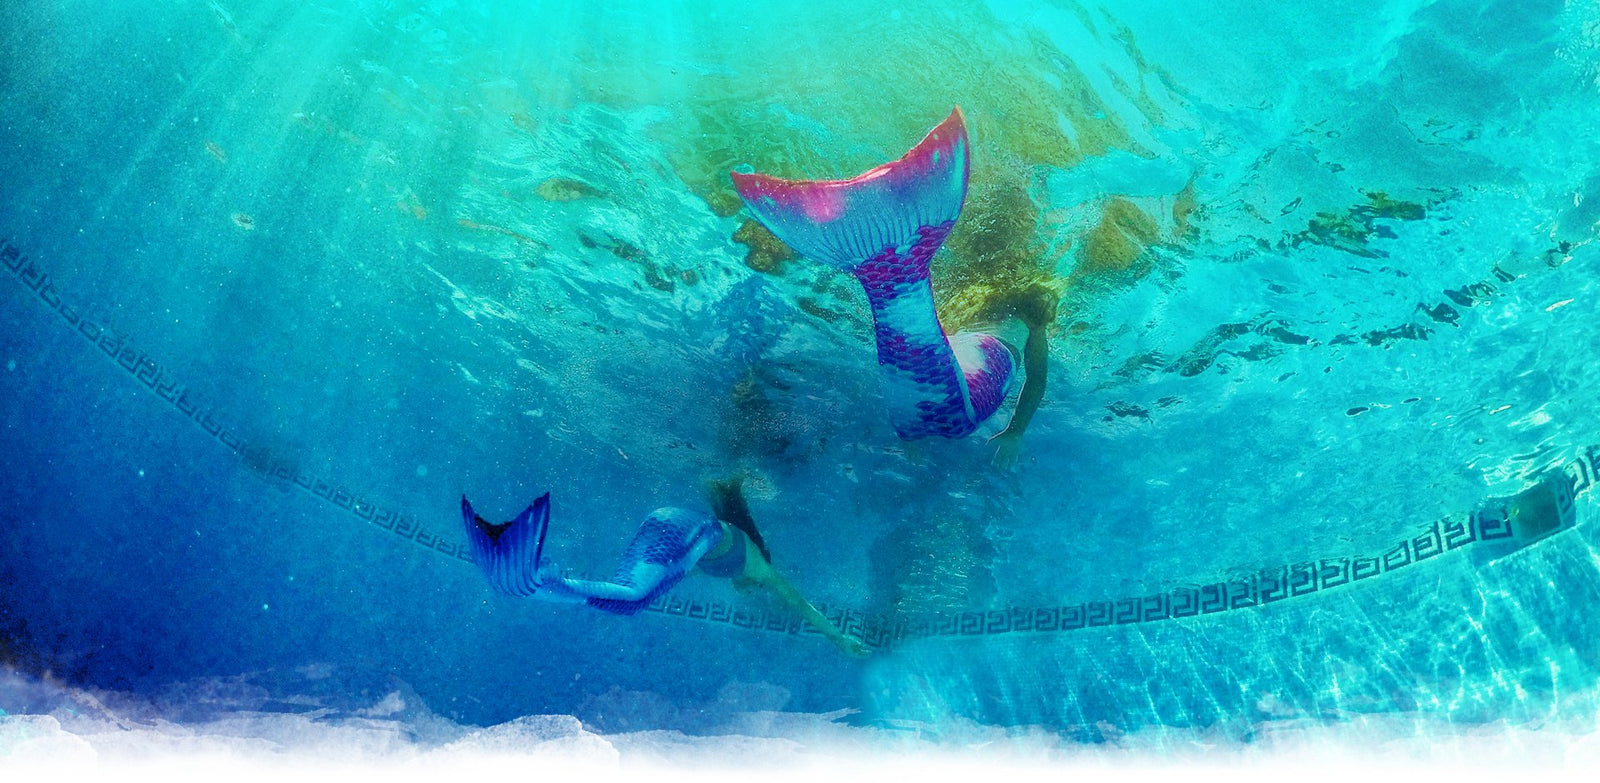 La Sirena - un Clásico Disney - Mermaids Tail